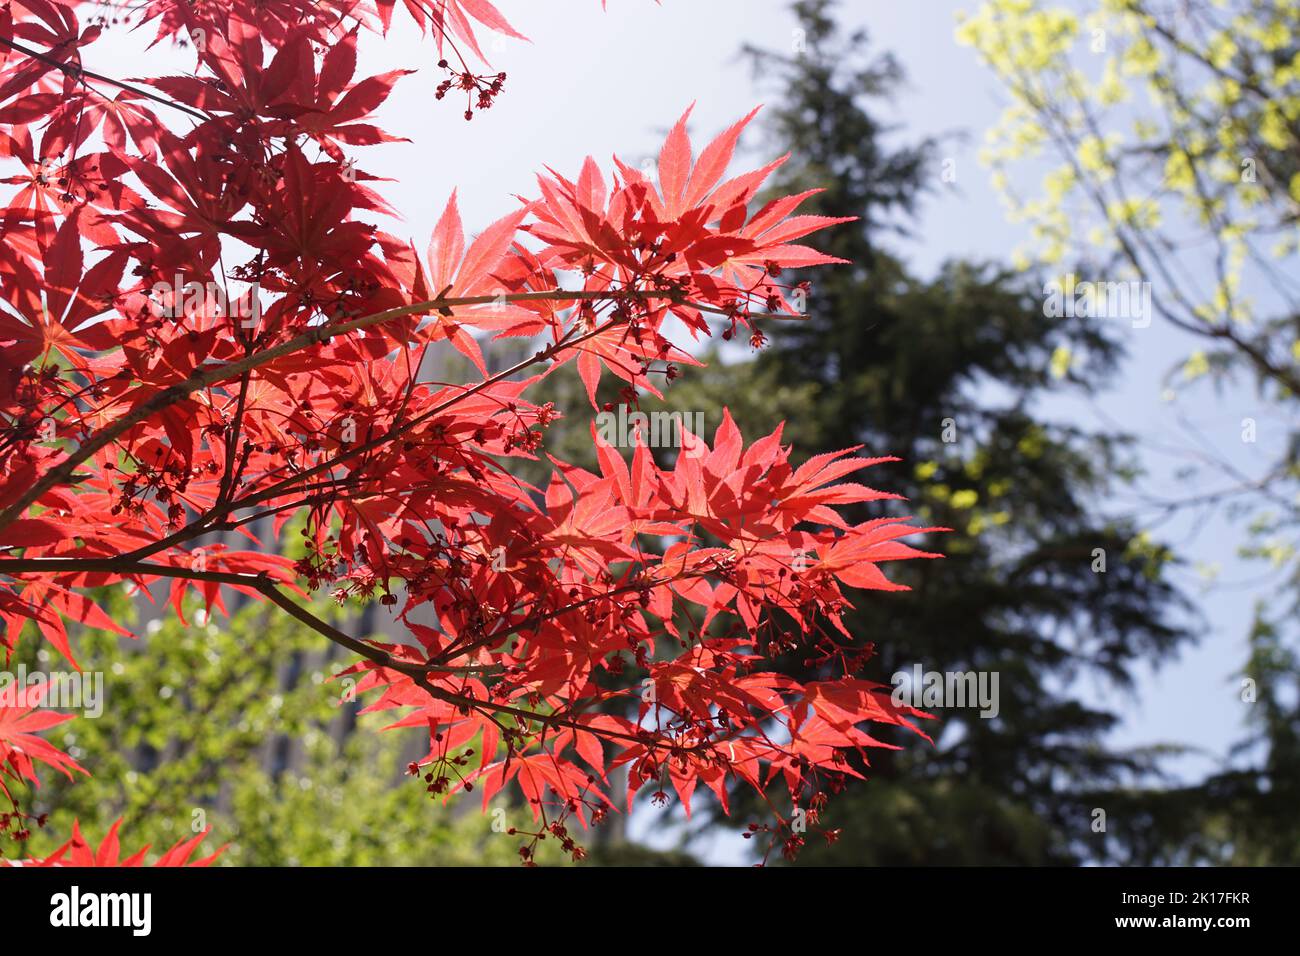 Nahaufnahmen von Ahorn und roten Blättern unter dem blauen Himmel Stockfoto